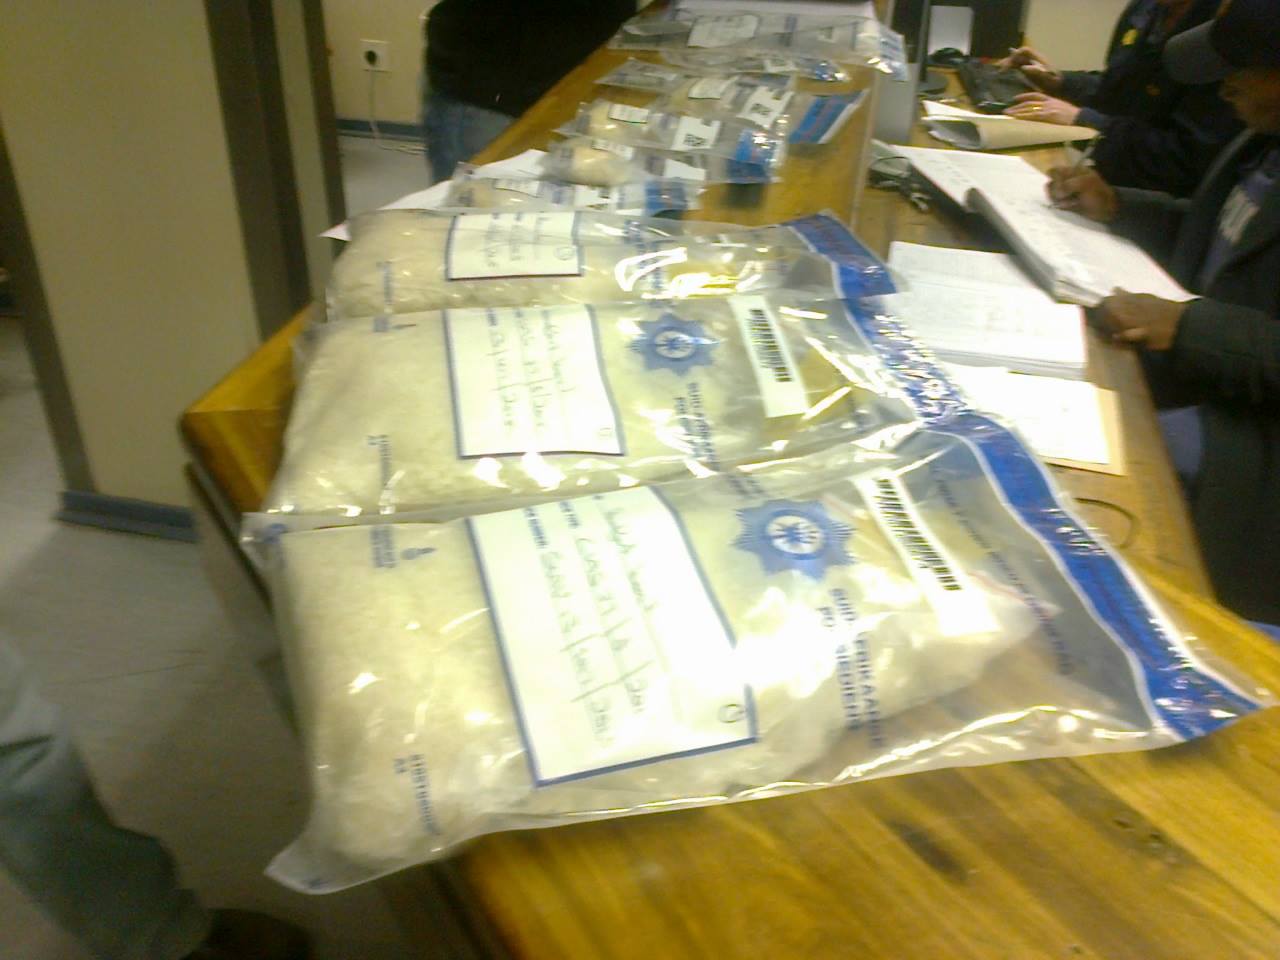 Drug traffickers arrested